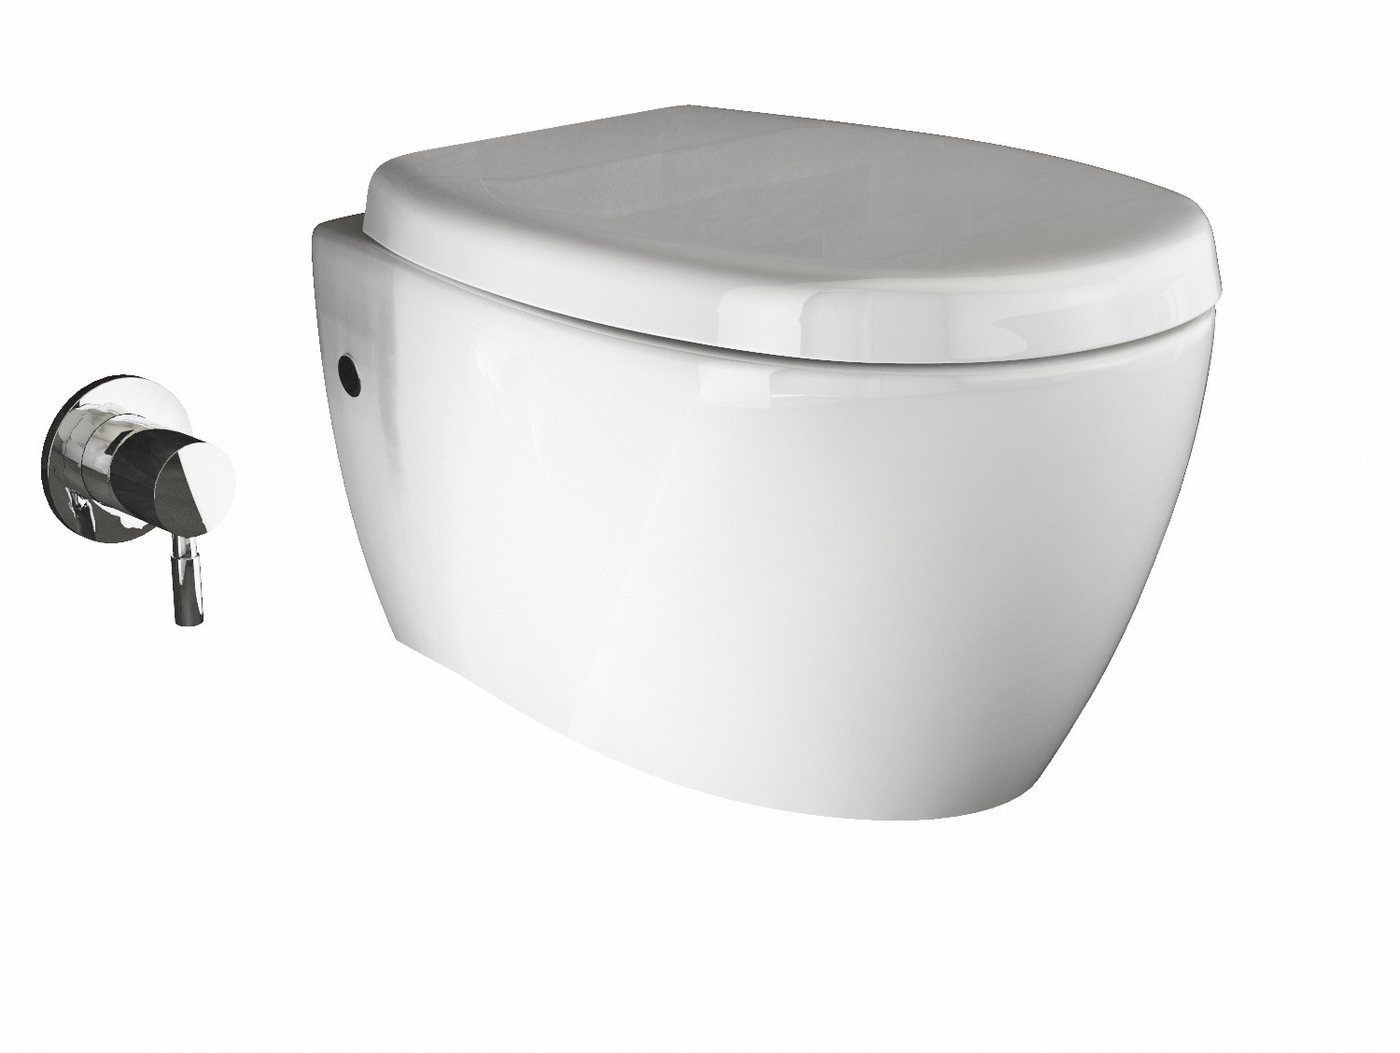 Aqua Bagno Tiefspül-WC Aqua Bagno Taharet WC inkl. Softclose WC-Sitz Dusch-WC Hänge-WC Toilet von Aqua Bagno